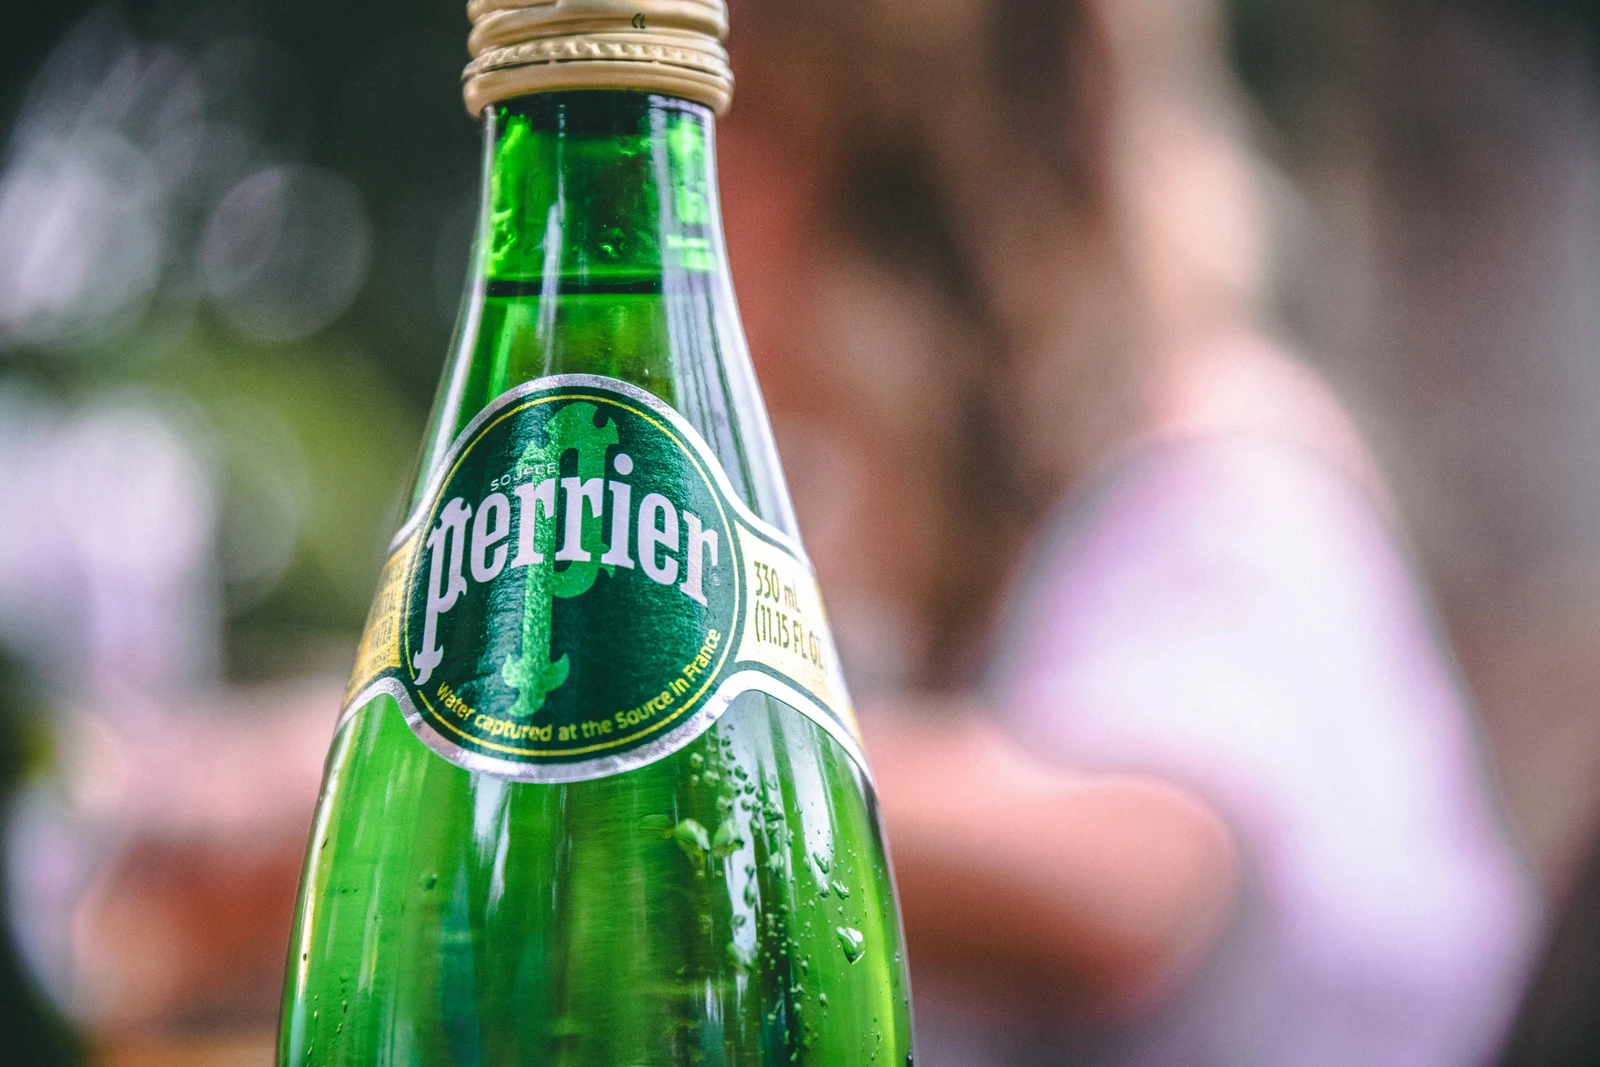 Perrier destroys 2 million bottles ‘out of precaution’